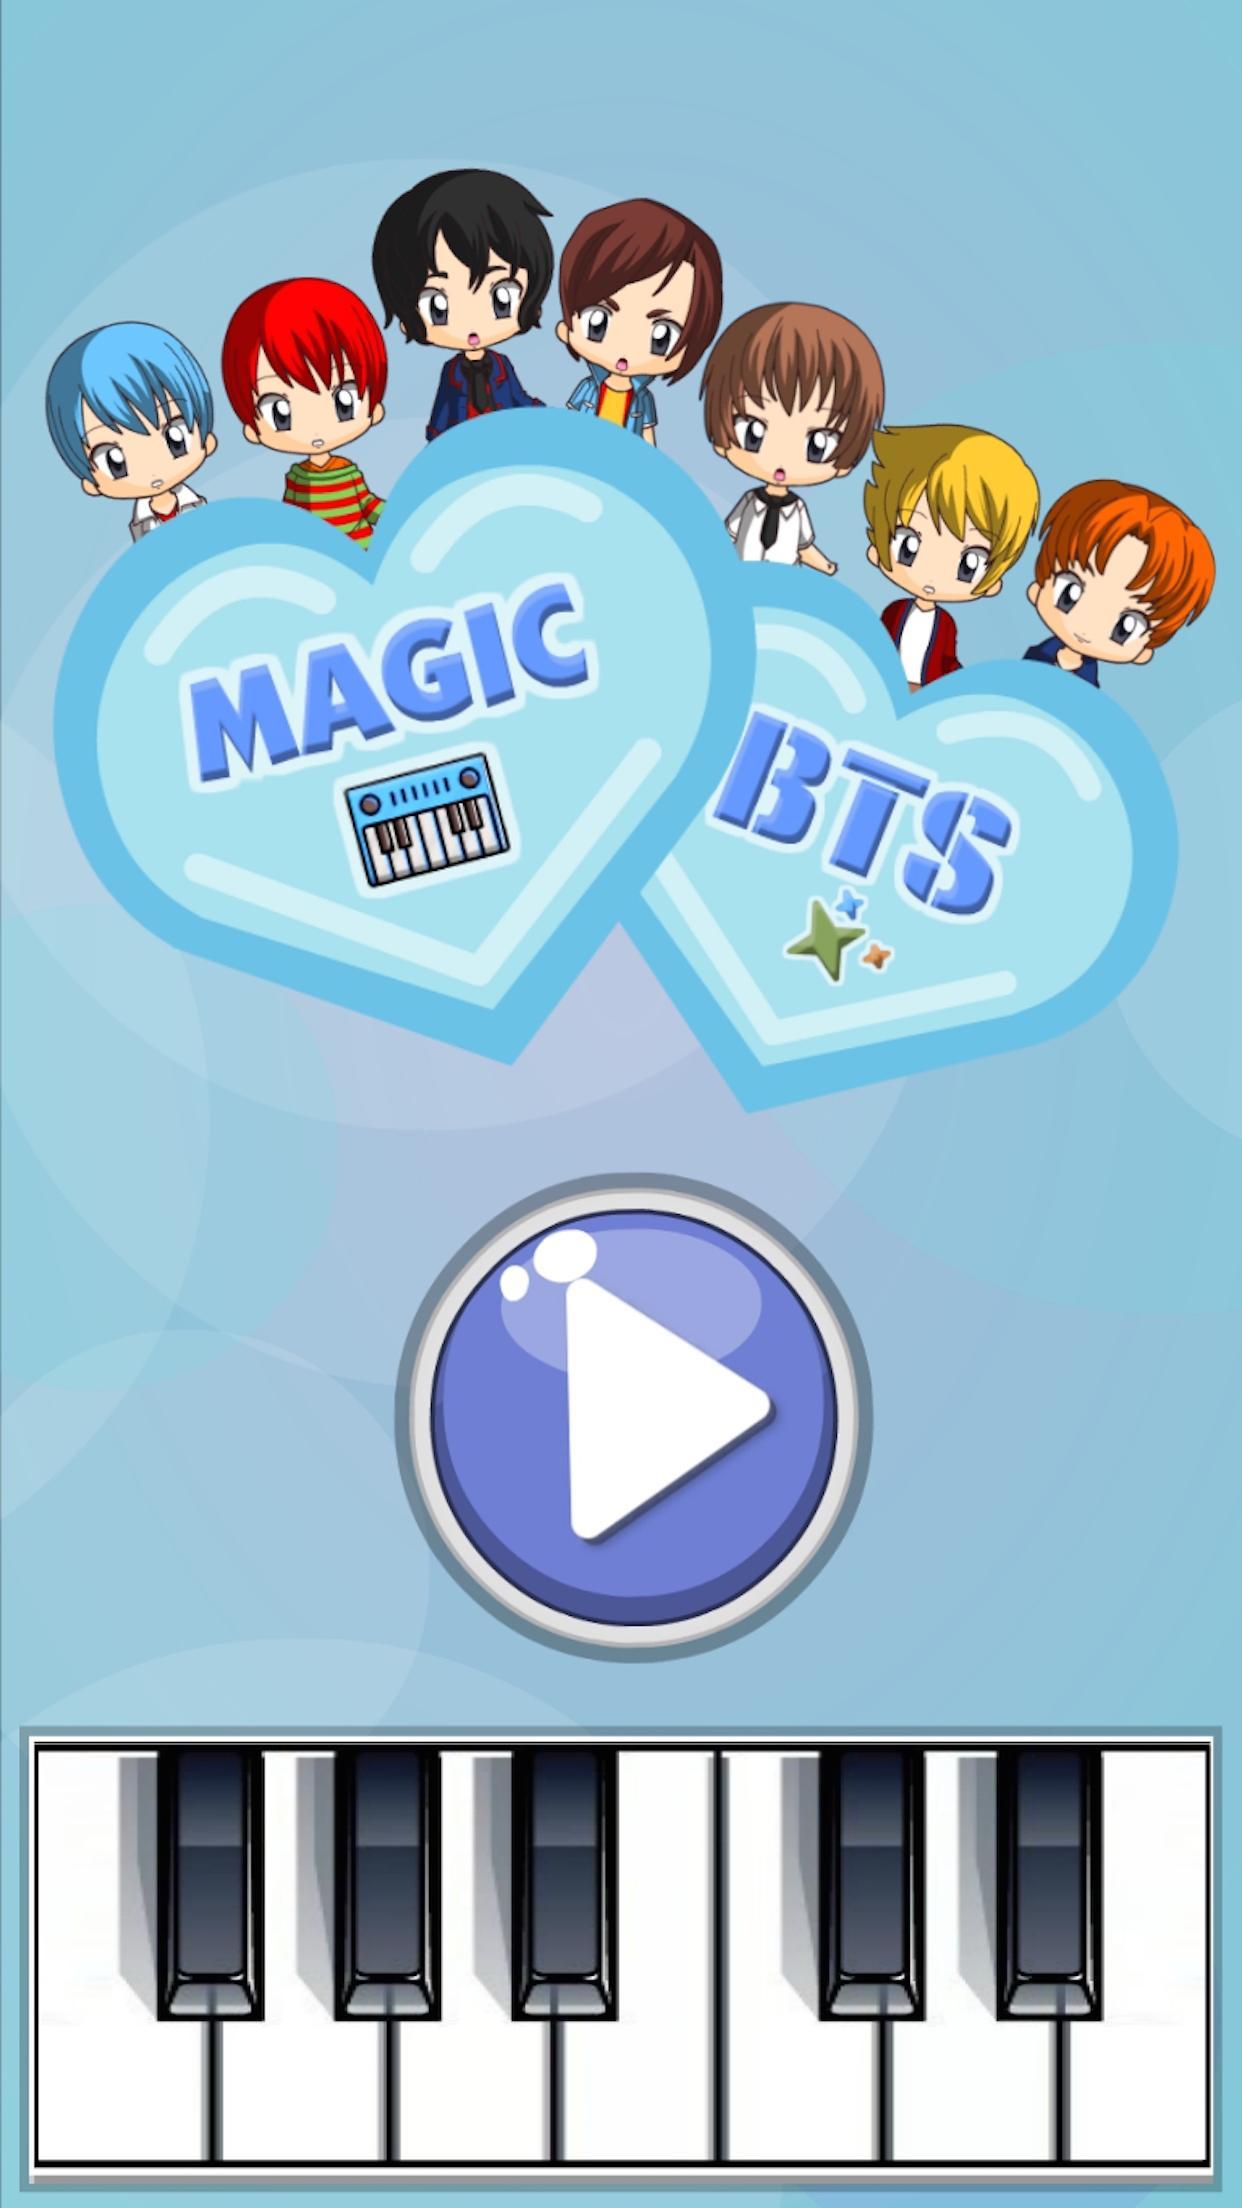 Jogo BTS Piano Tiles versão móvel andróide iOS apk baixar